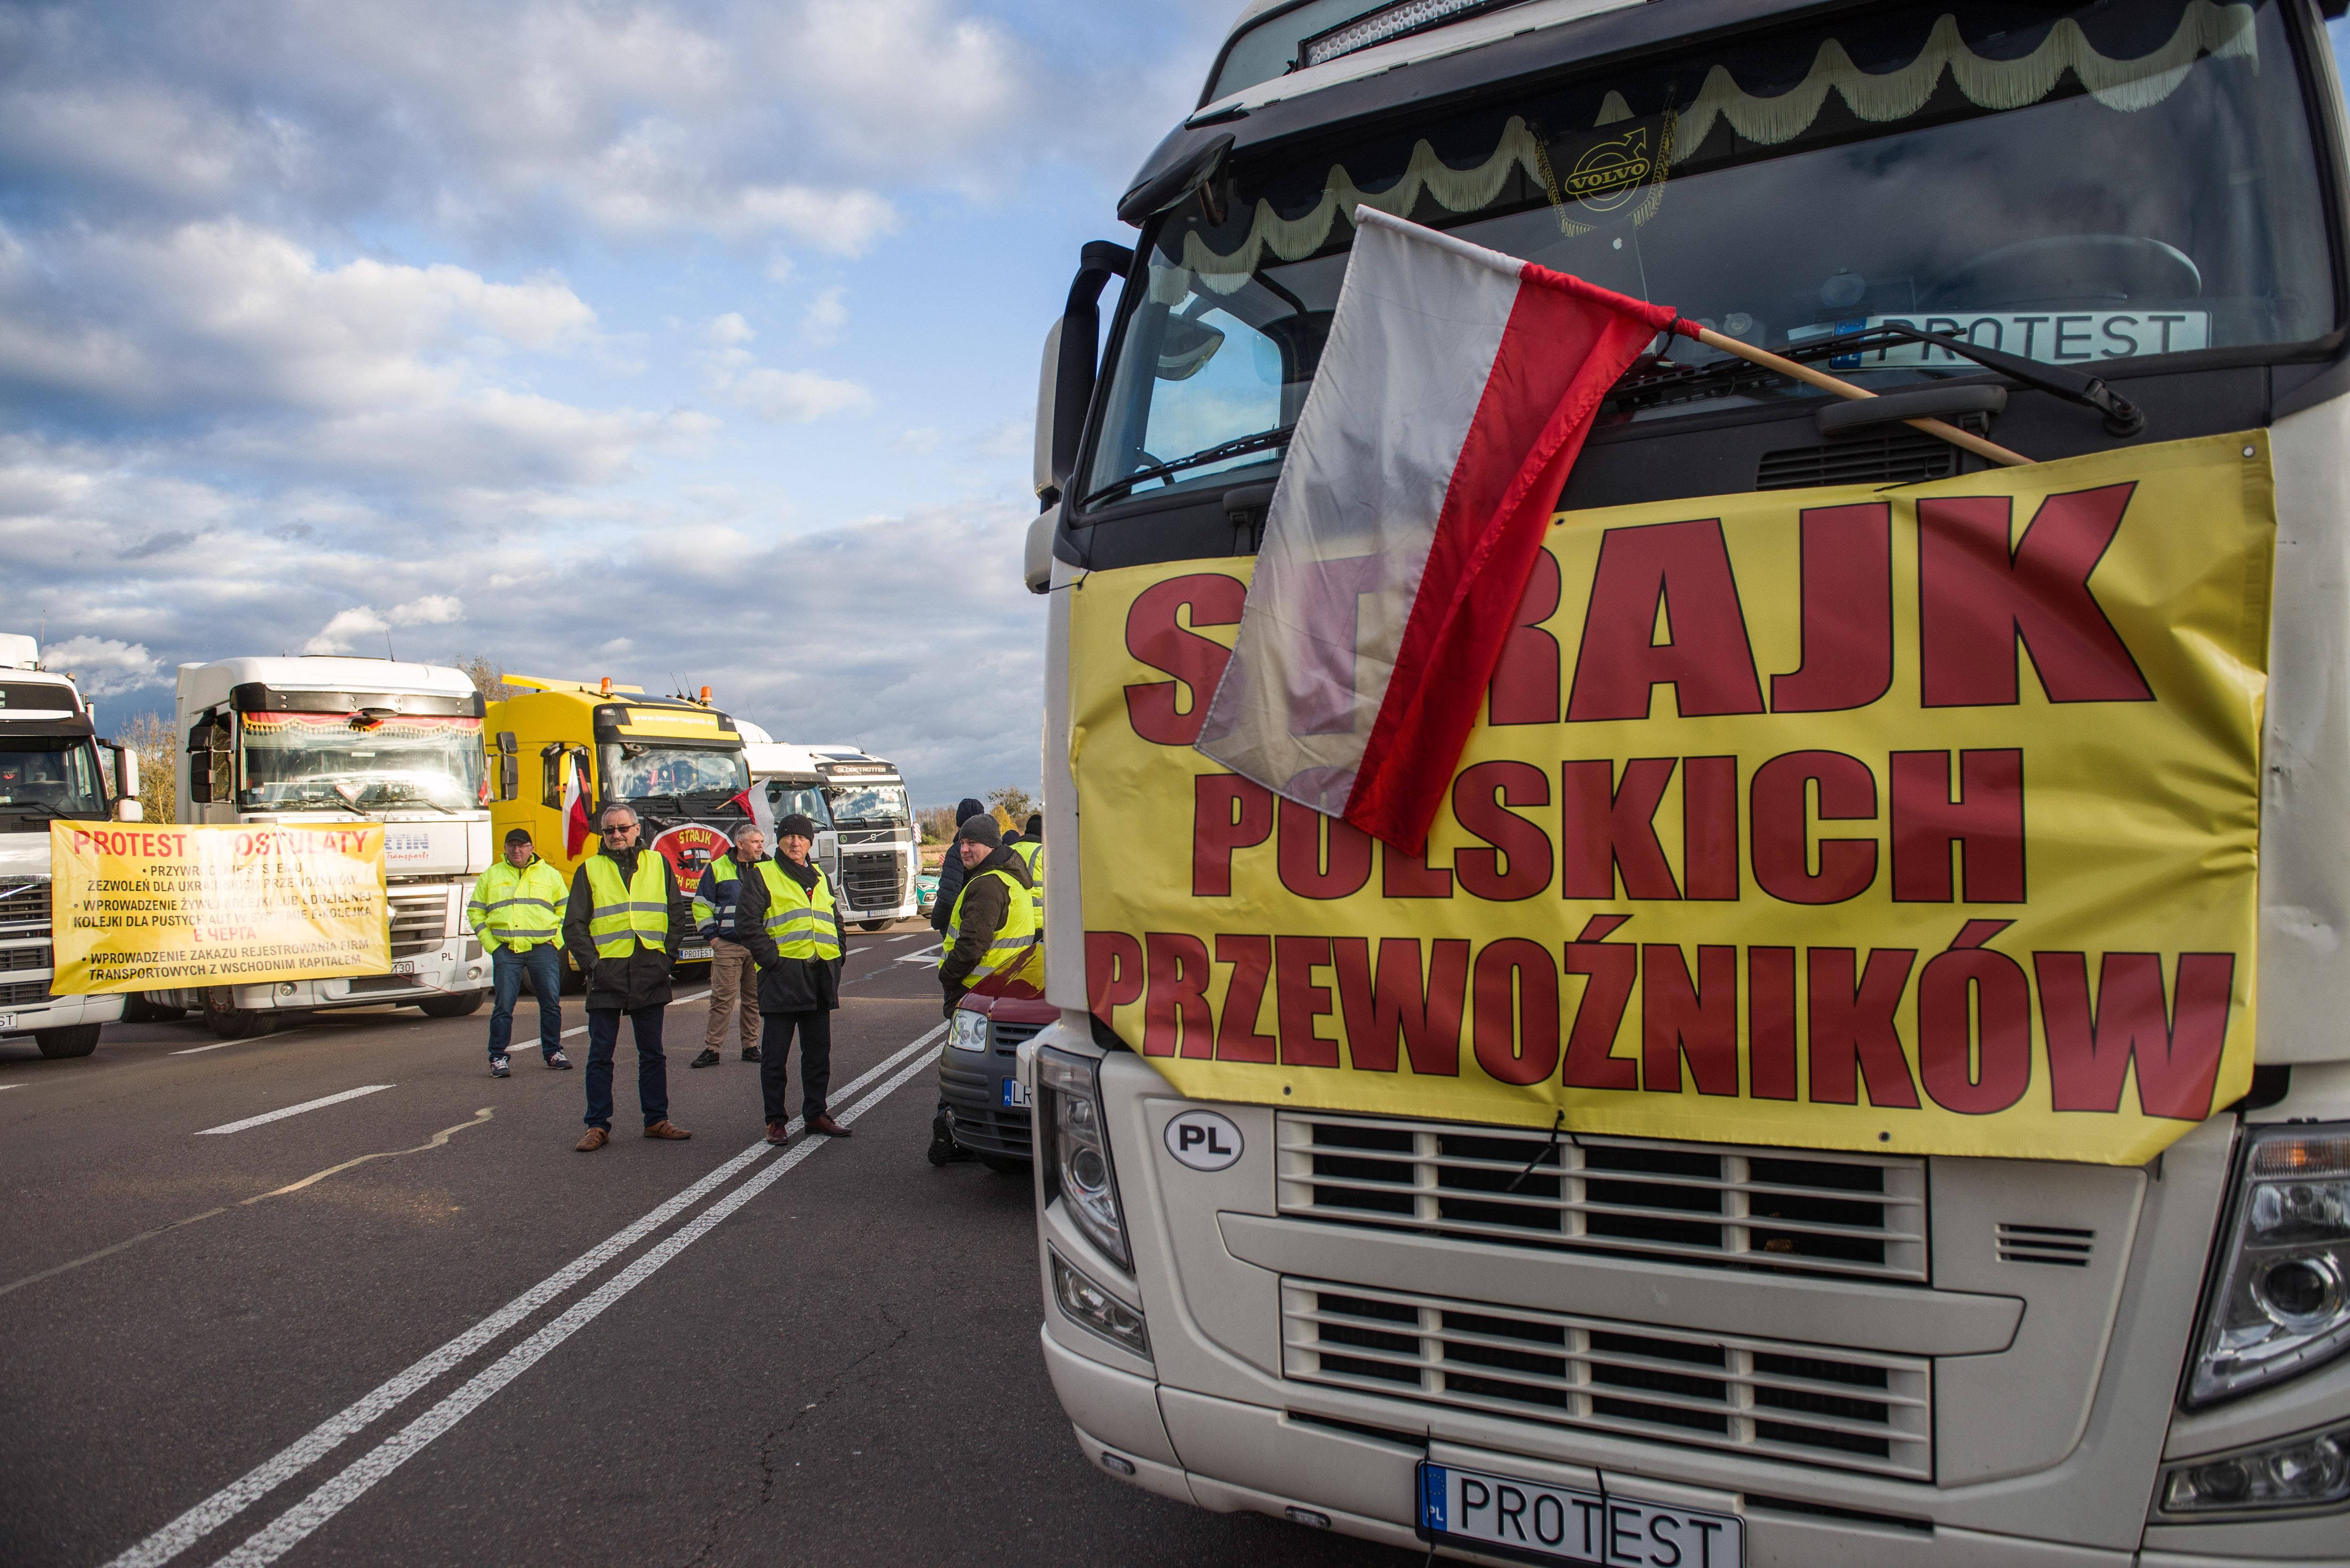 Як Єврокомісія ставиться до страйку польських перевізників